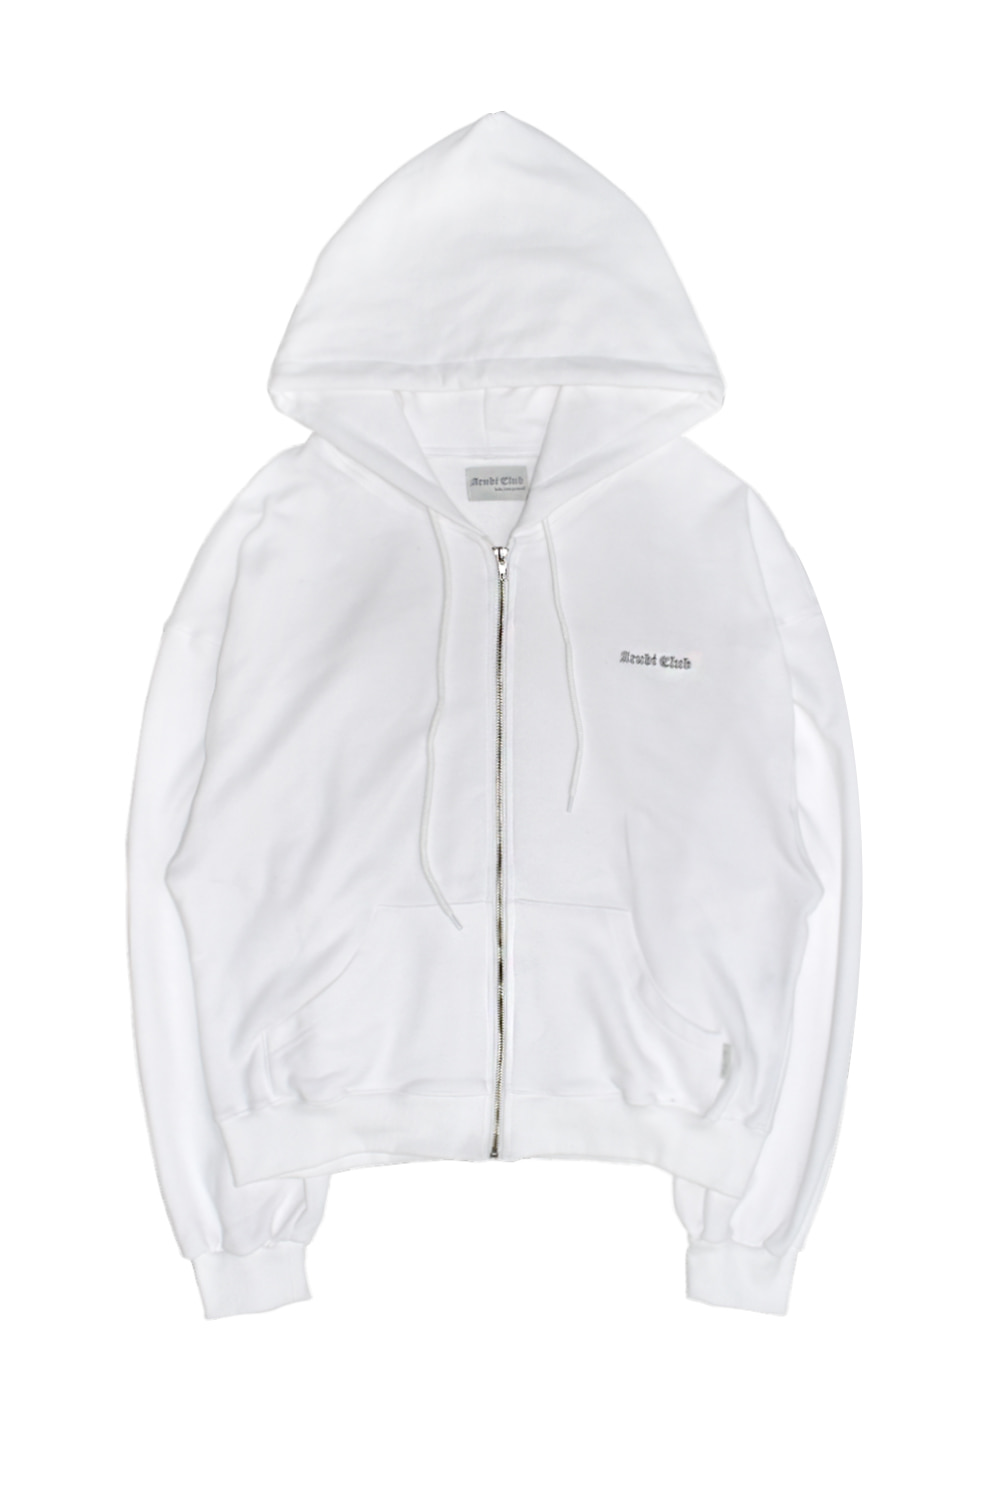 [ACUBI CLUB] Logo loose hoodie zip-up (white)